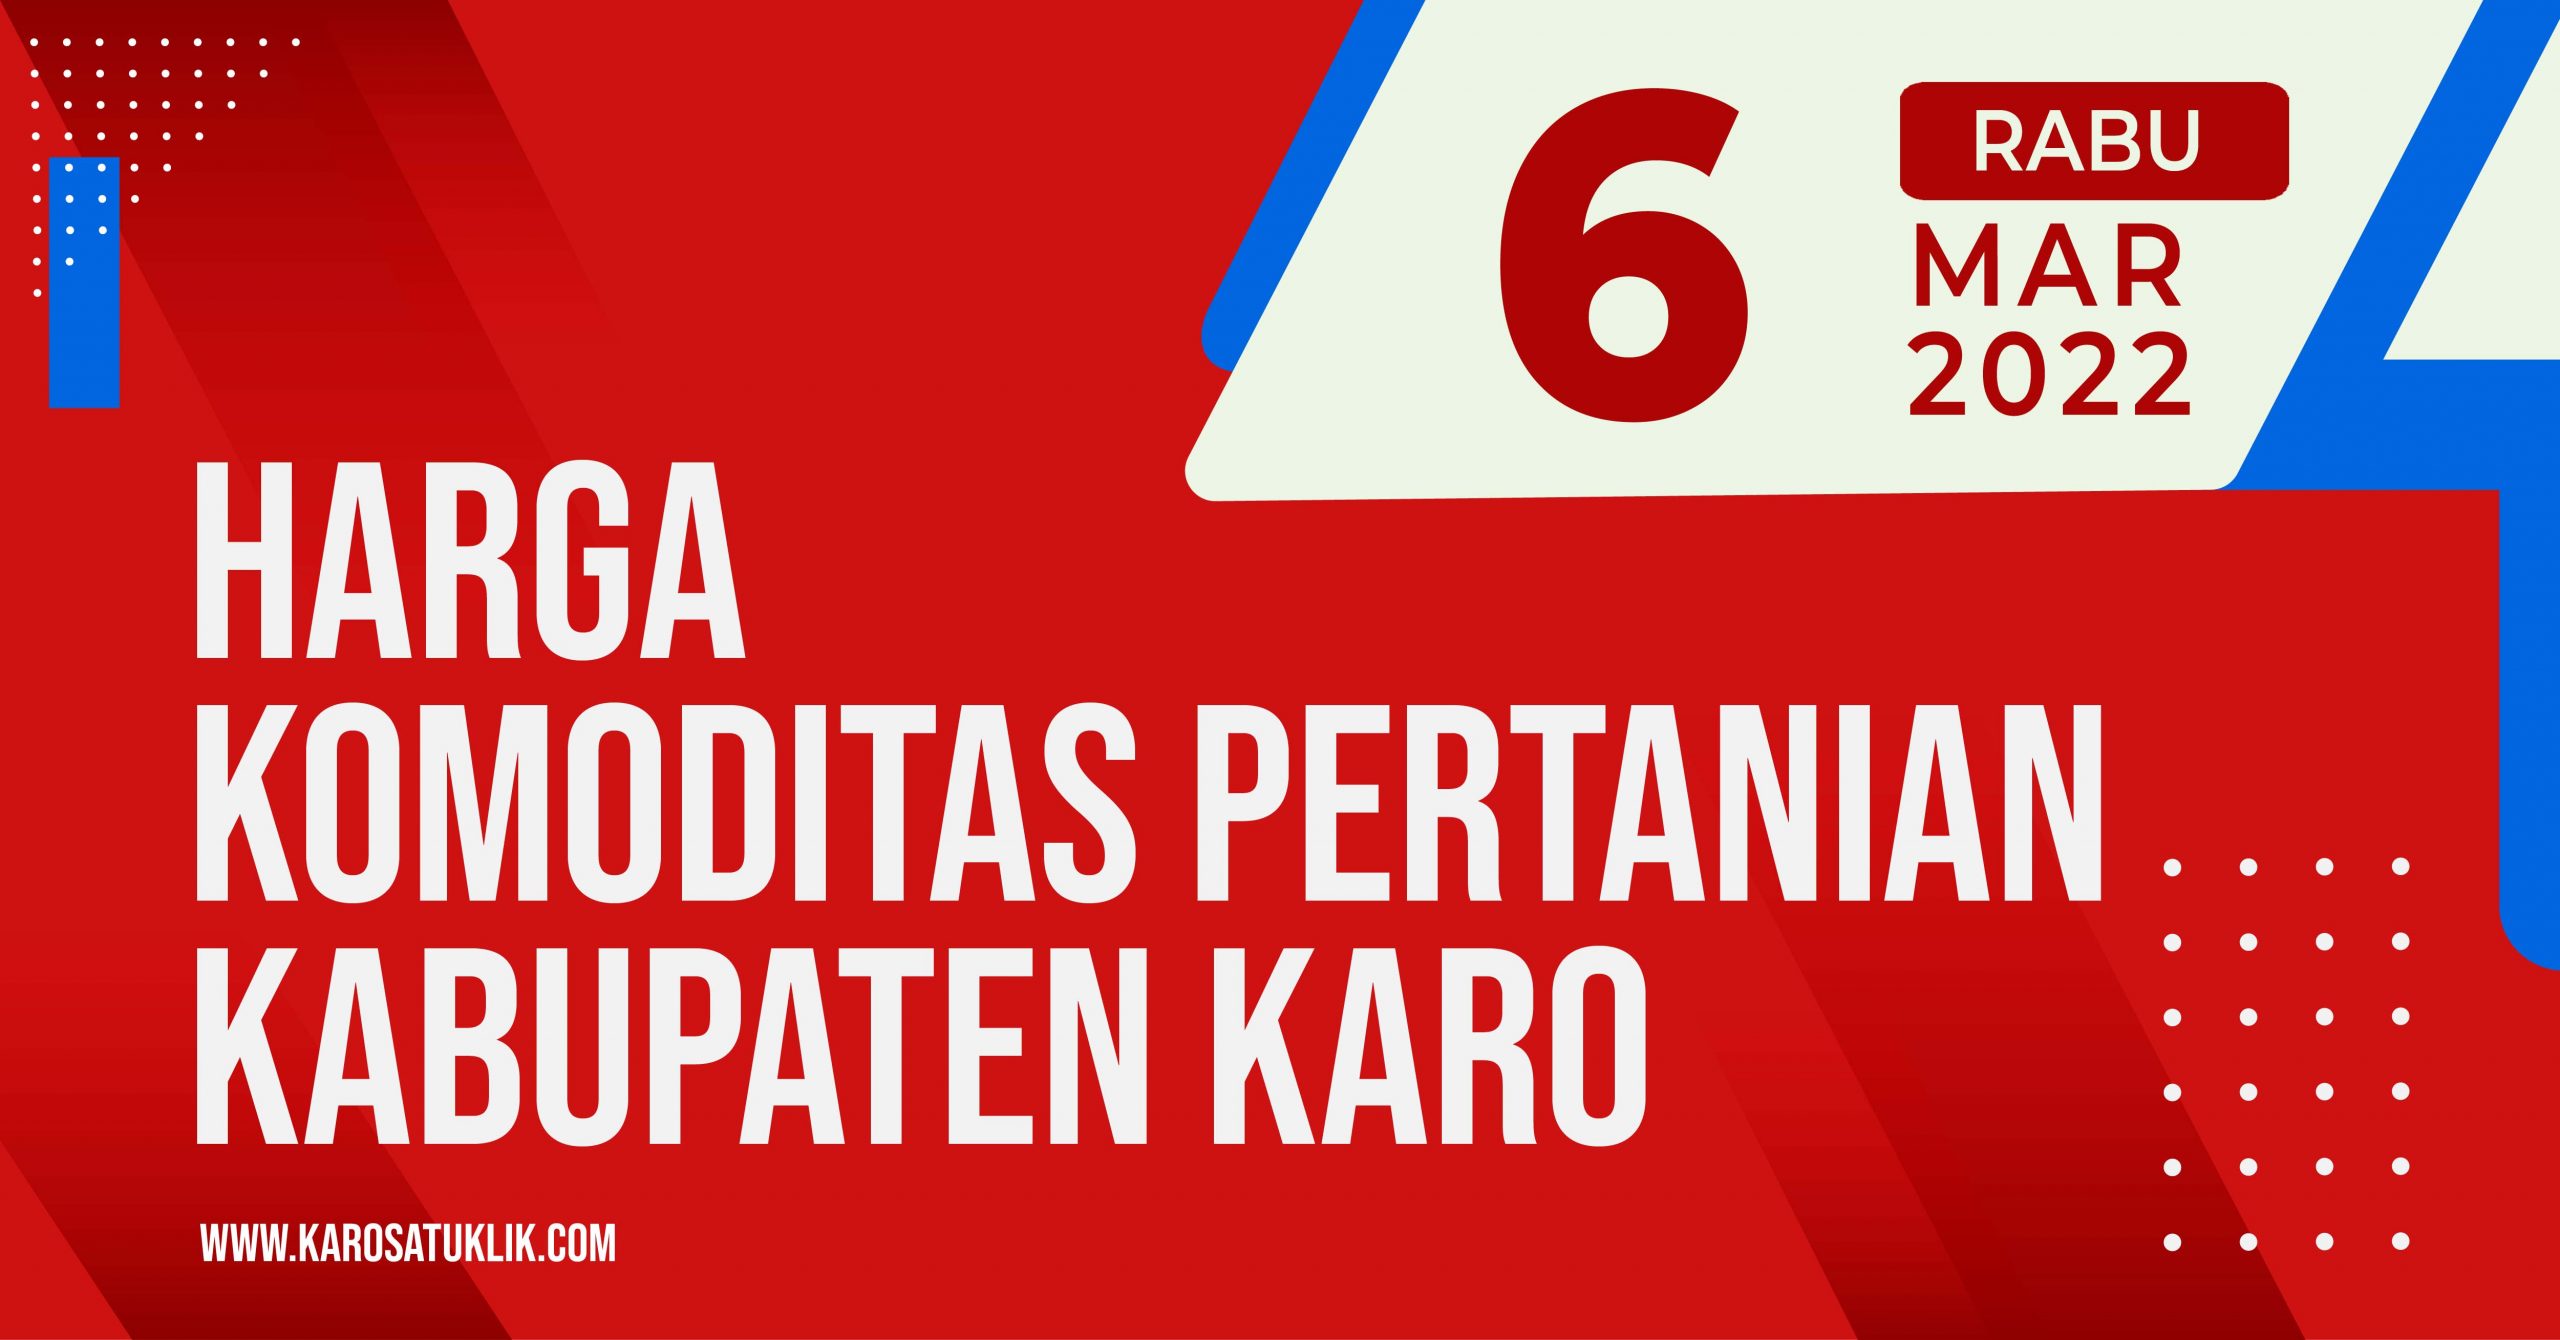 Daftar Harga Komoditas Pertanian Kabupaten Karo, Rabu 6 April 2022